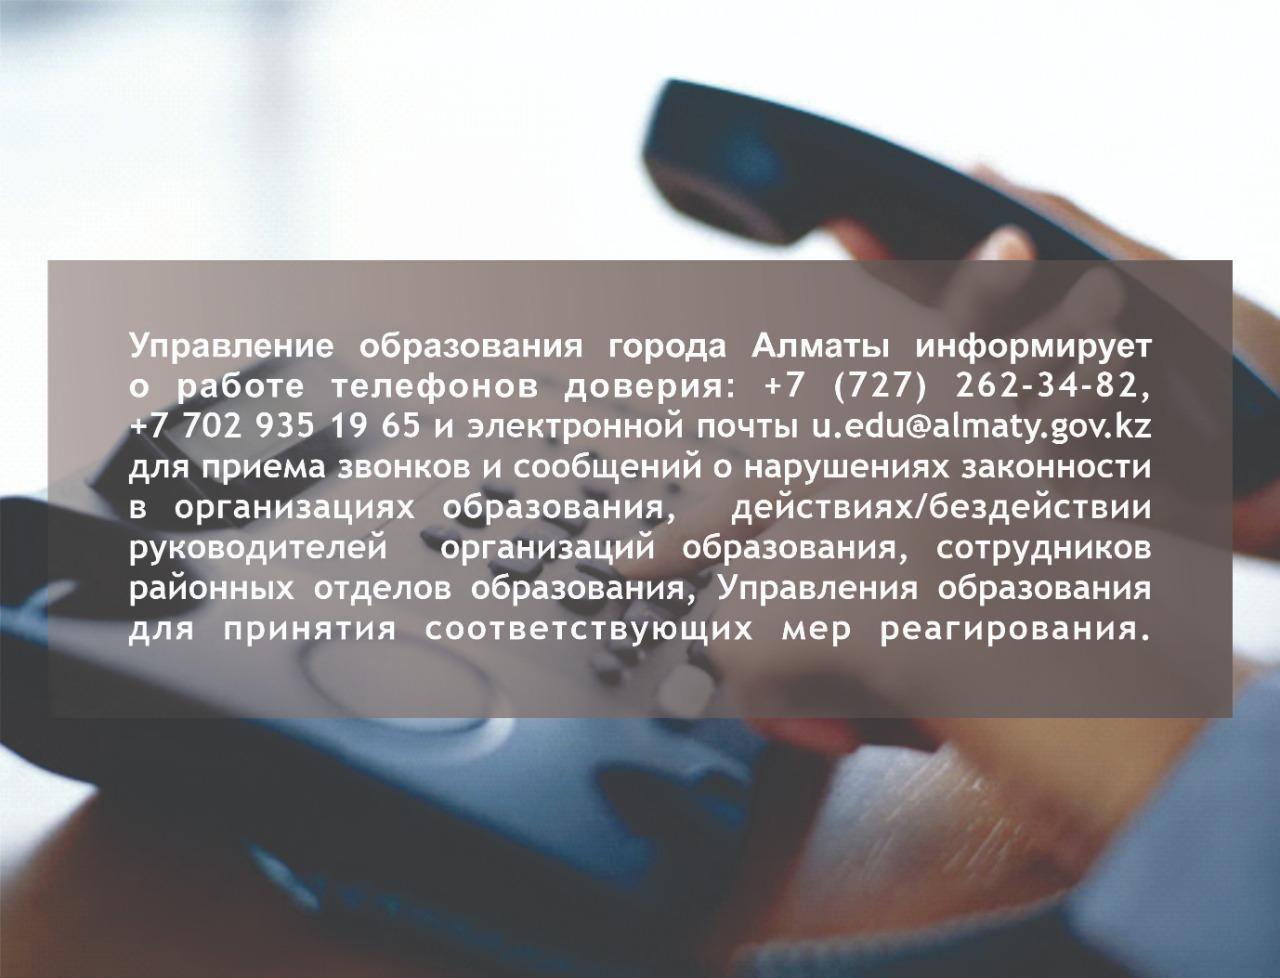 Управление Образования города Алматы информирует о работе телефонов доверия